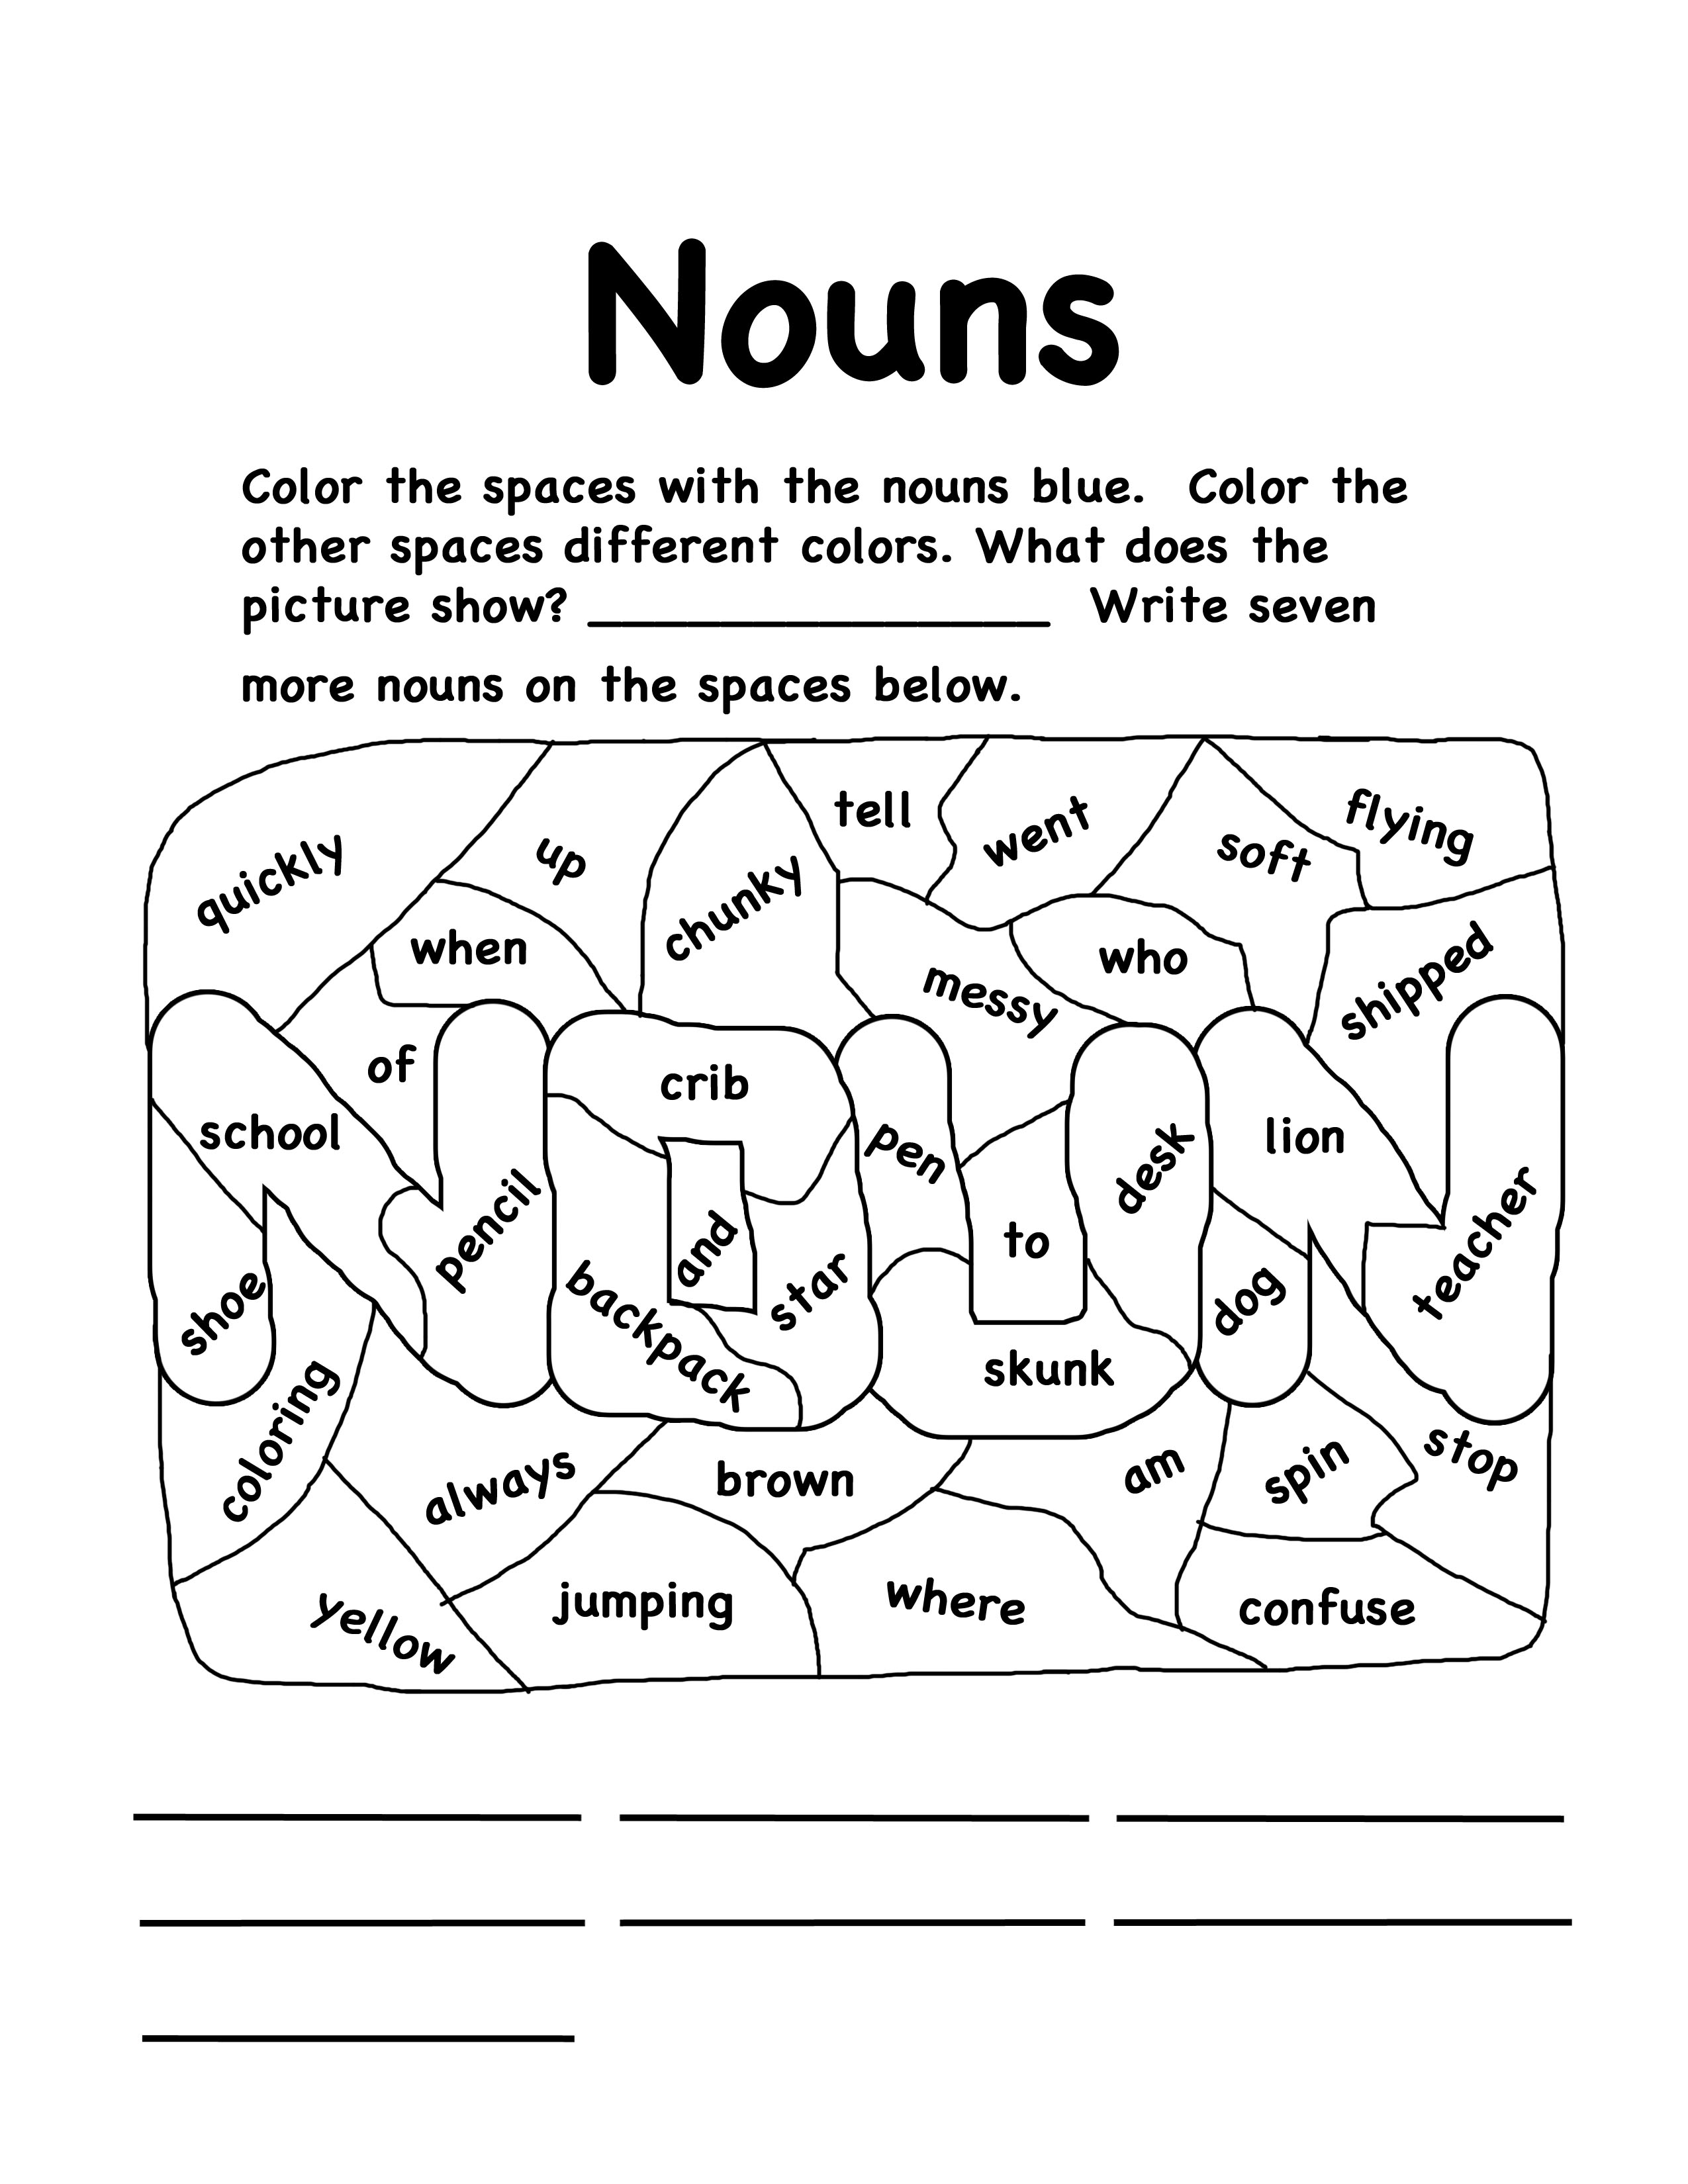 nouns-worksheets-for-kindergarten